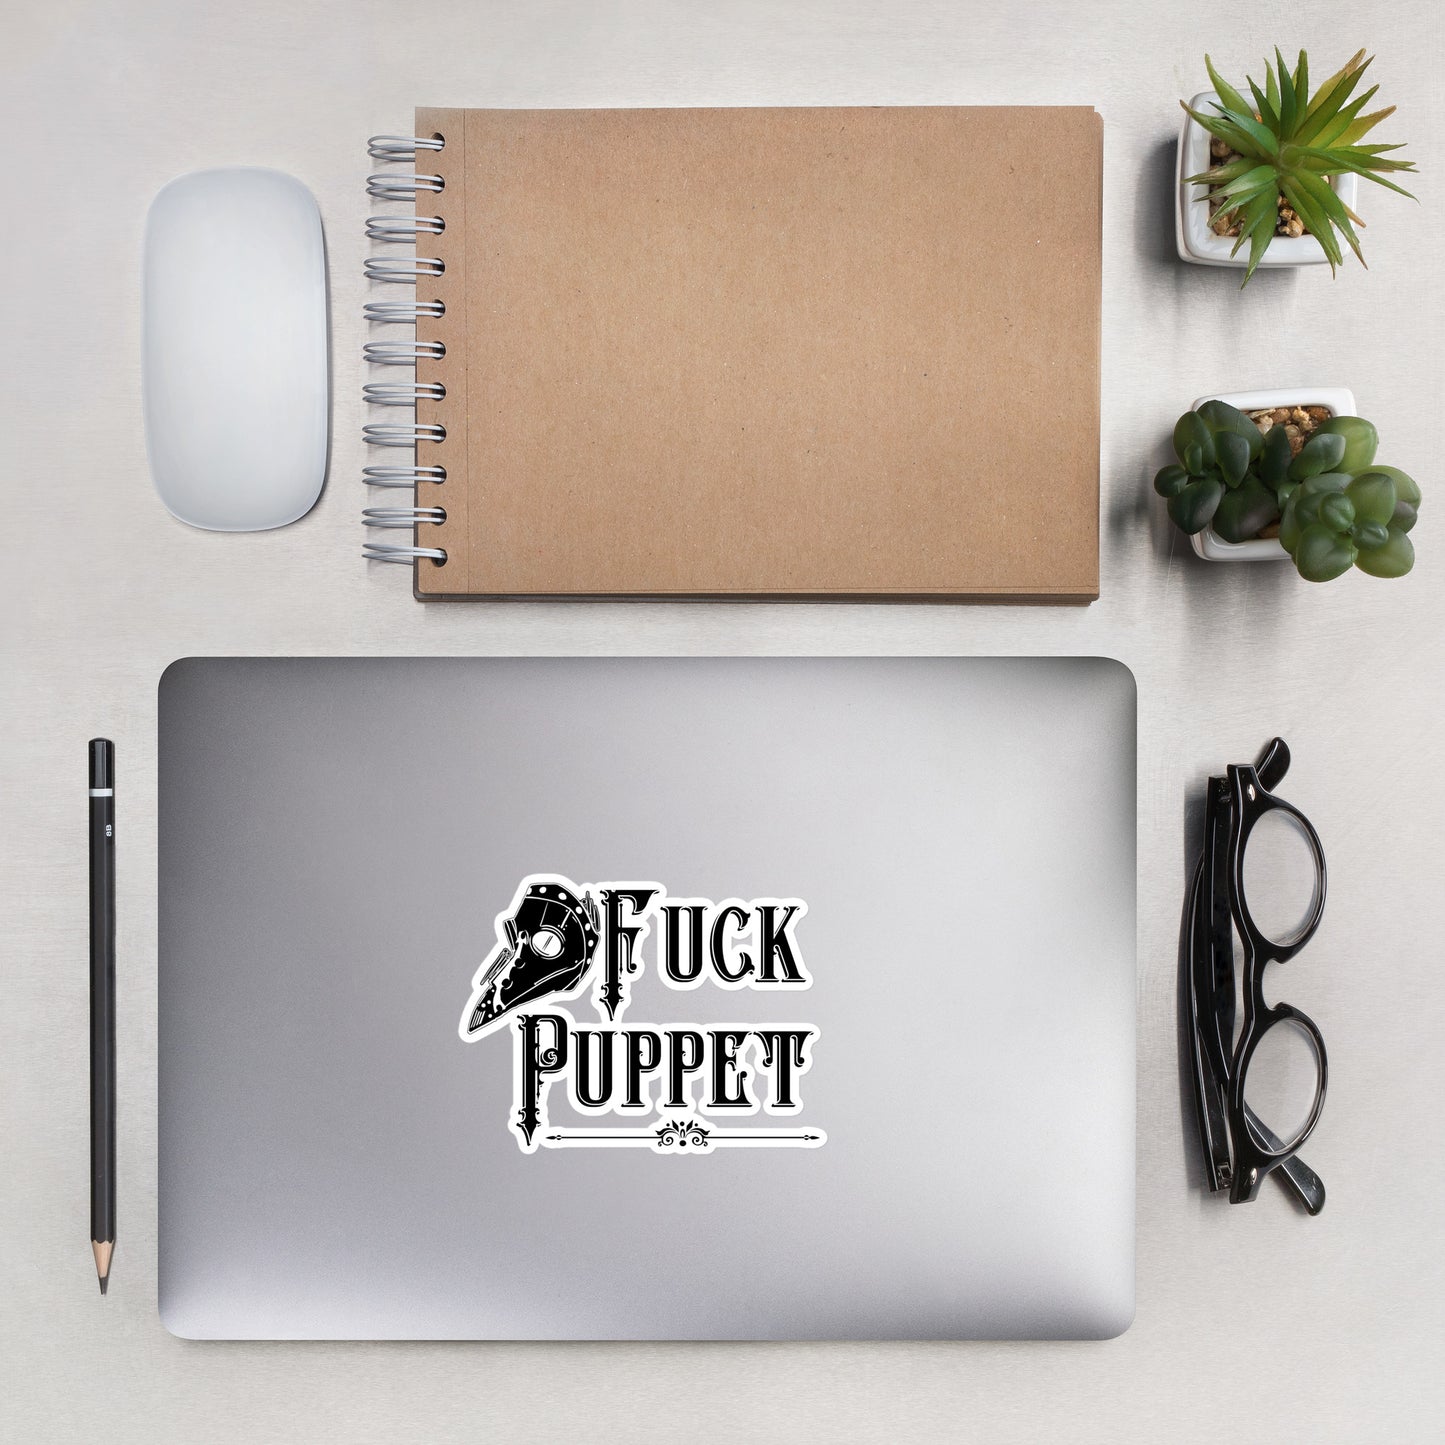 Fuck Puppet Sticker